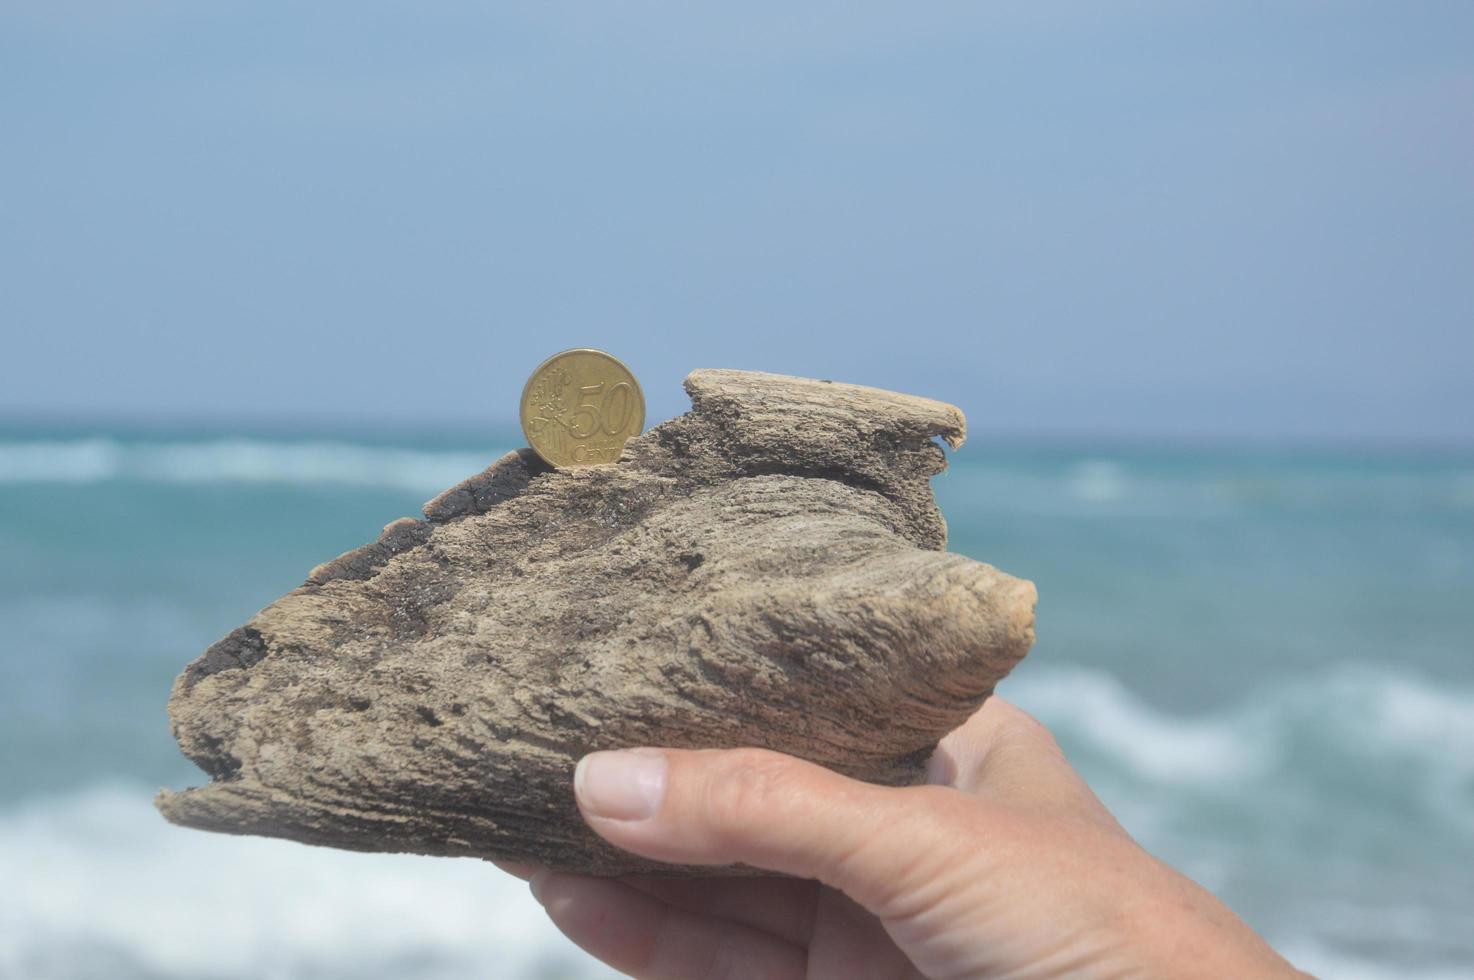 Münze im Wert von 50 Cent an der ägäischen Küste auf der Insel Rhodos in Griechenland foto